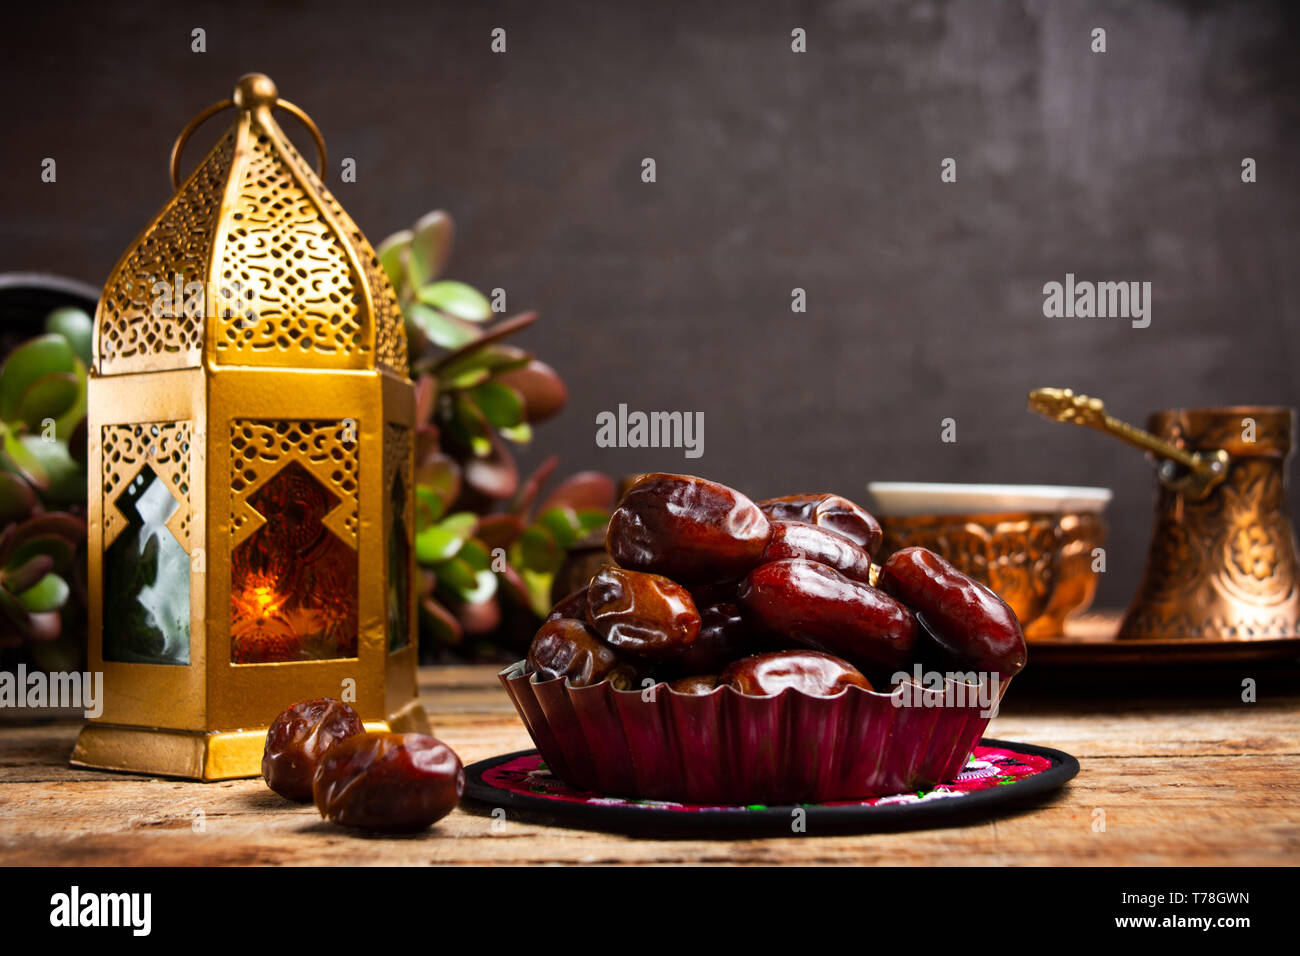 Date e stile Arabo lampada su un tavolo con spazio di copia Foto Stock